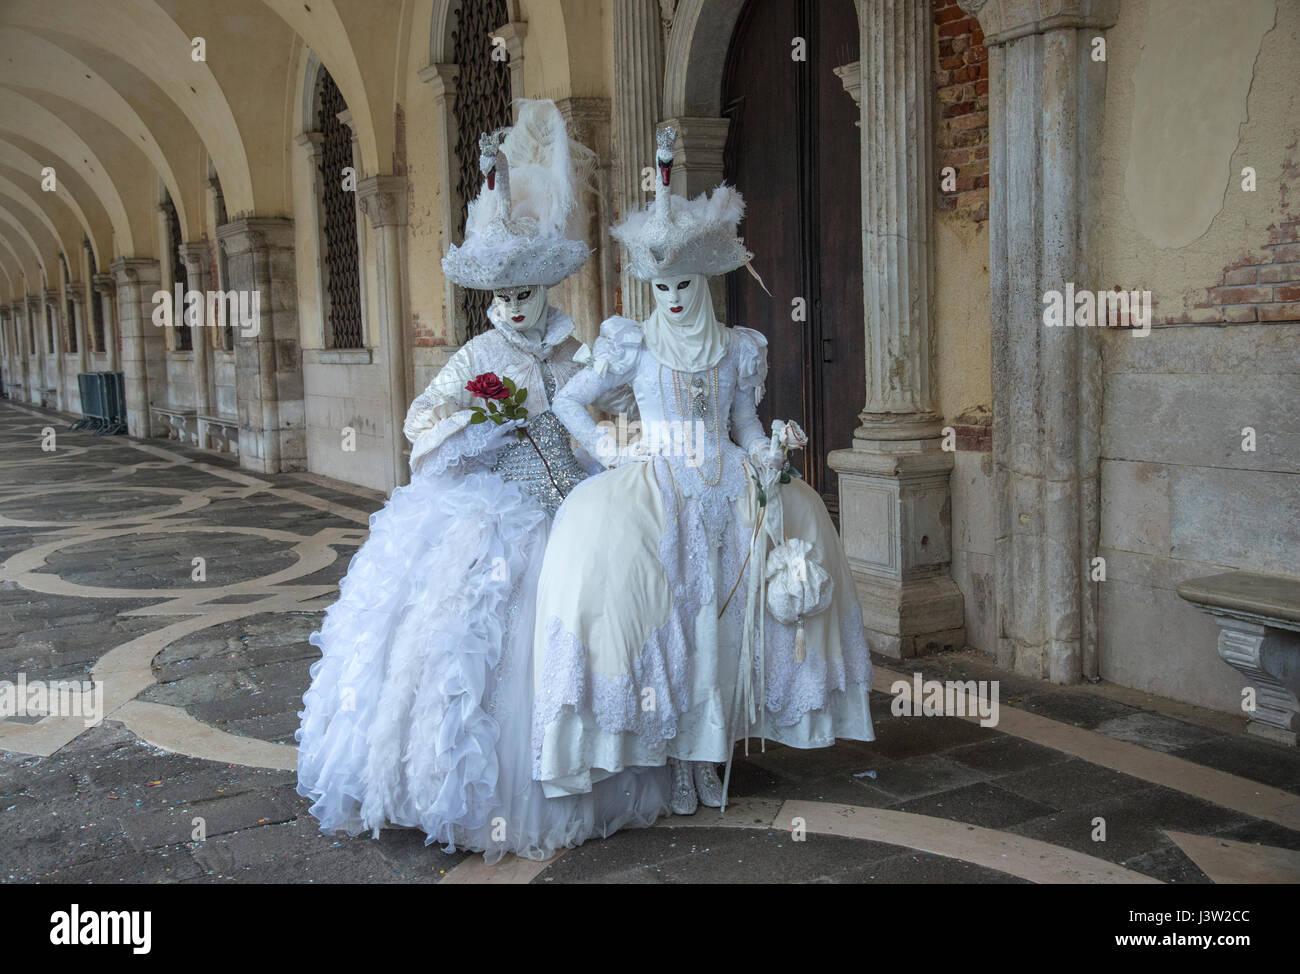 Bild von zwei Personen in komplementären kunstvollen Kostümen entlang des Dogenpalastes während des Karnevalfestes in Venedig, Italien. Stockfoto